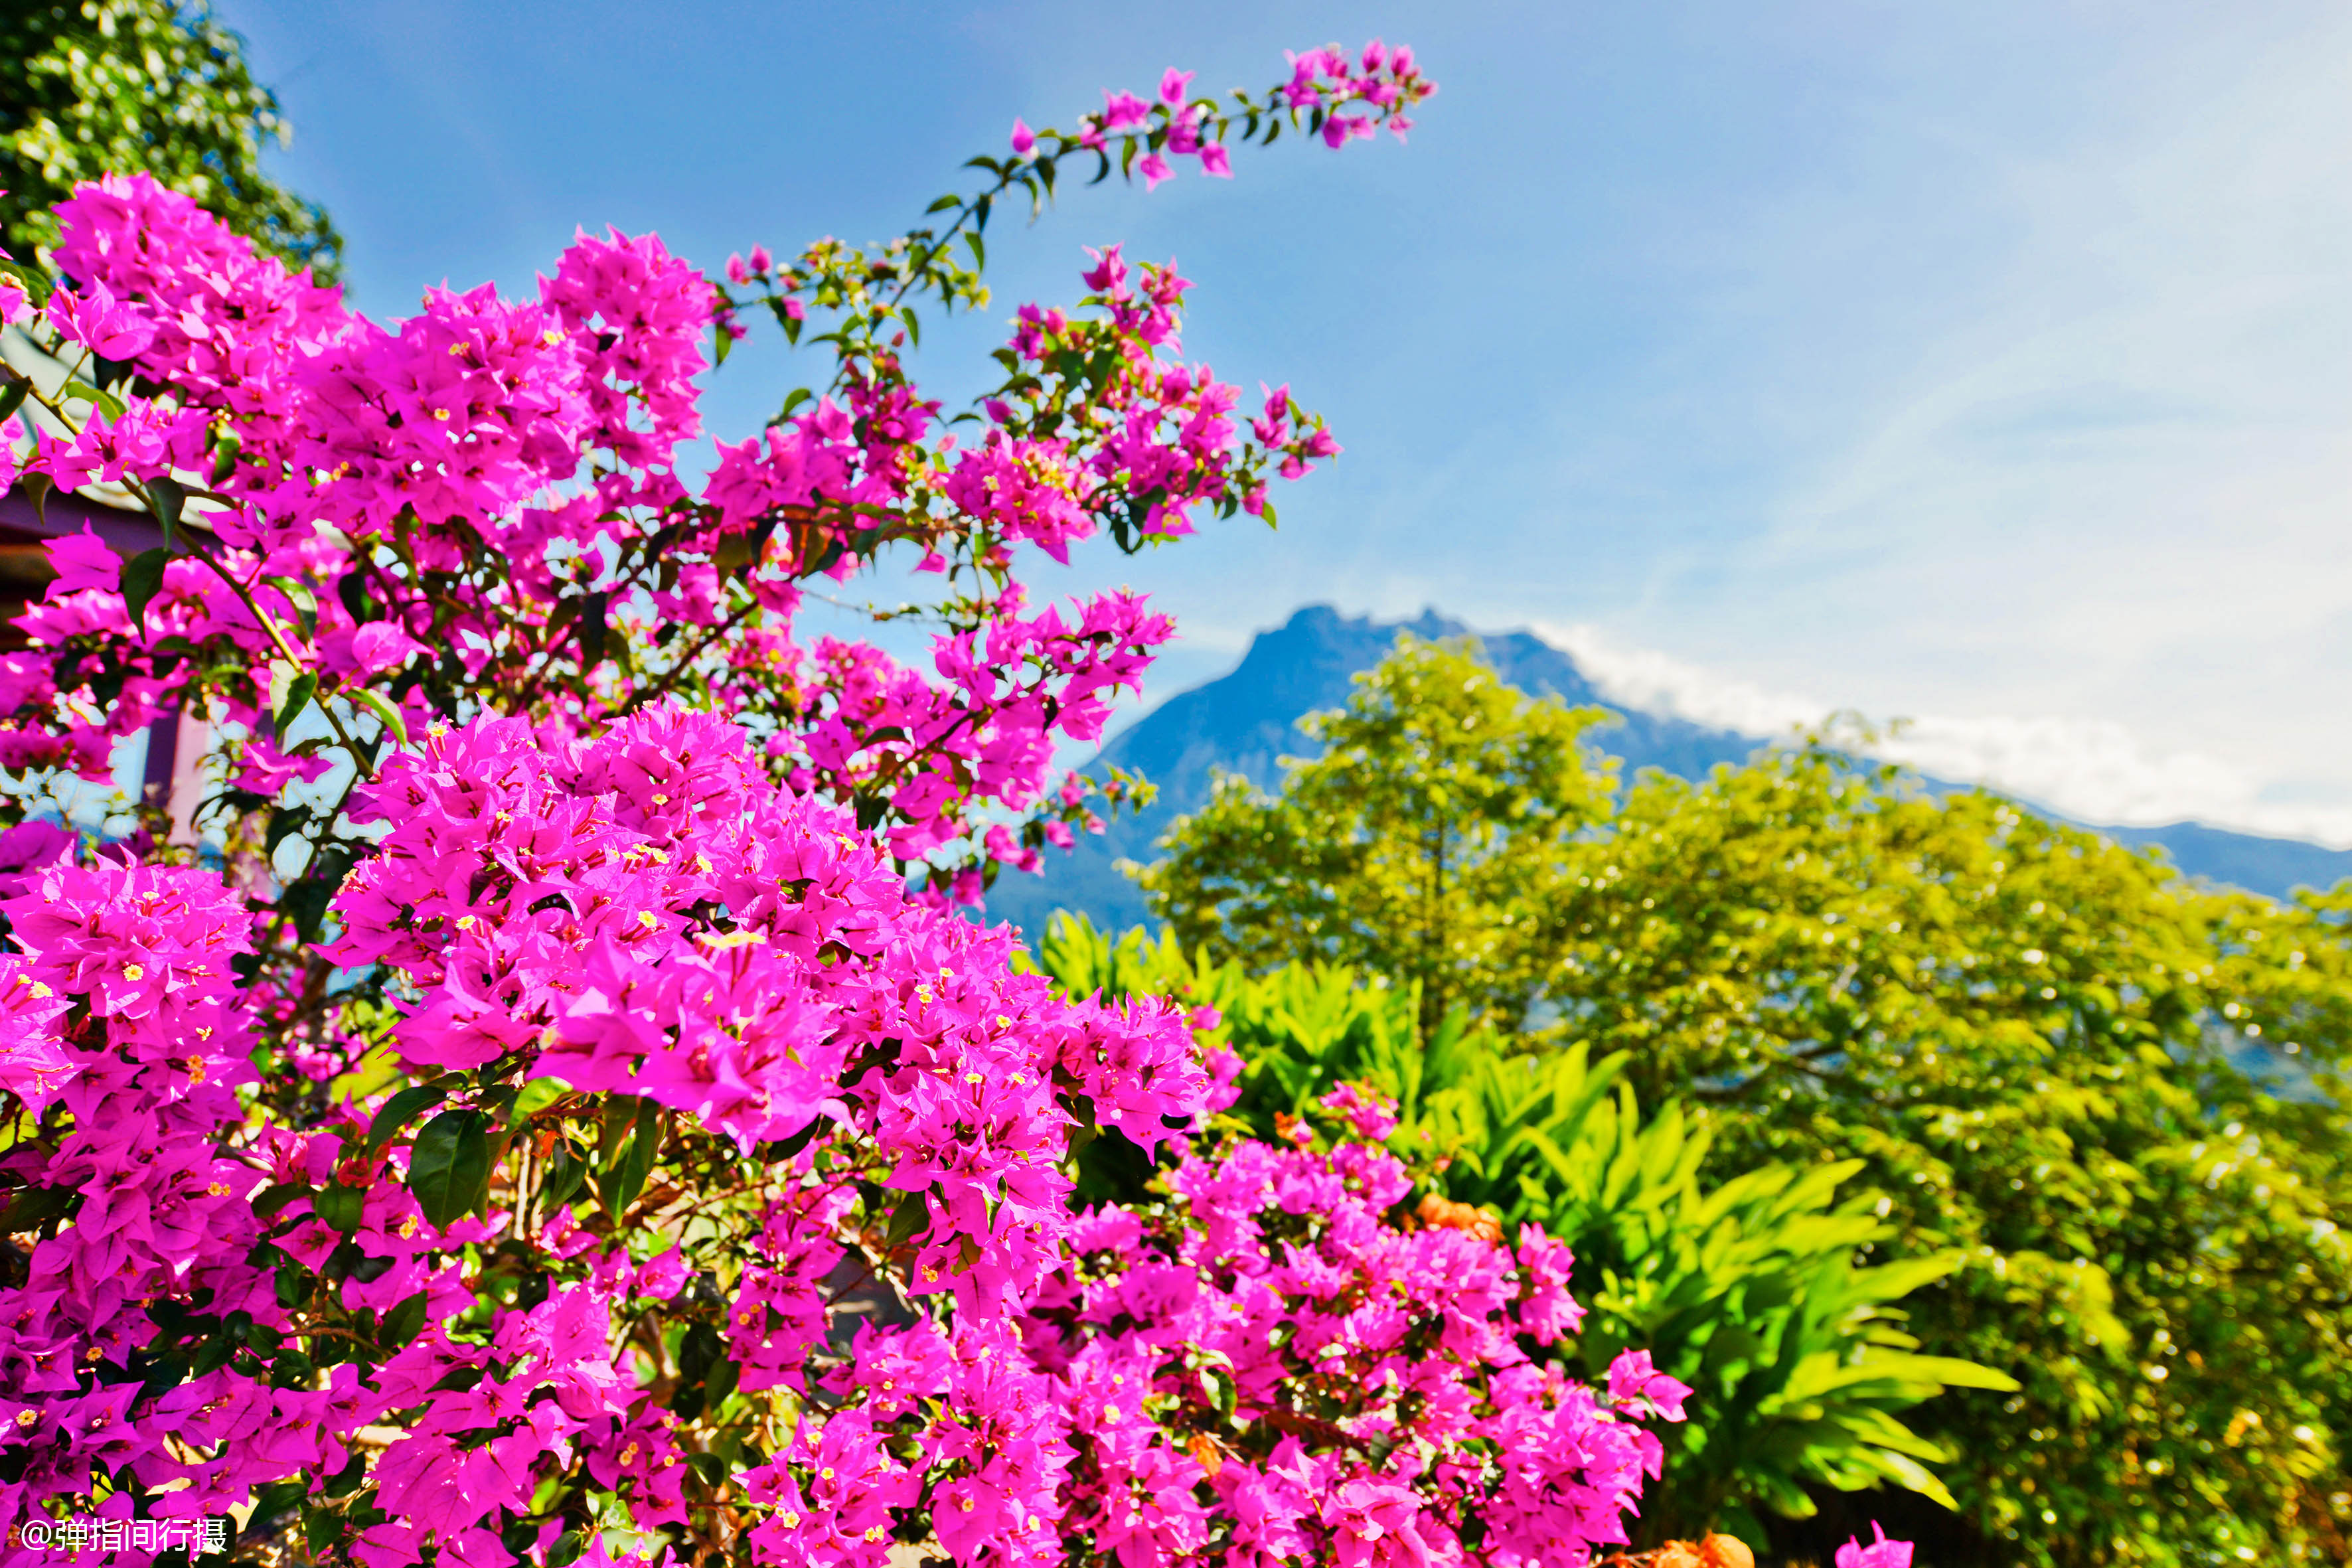 原创             世界上最大的花卉，花瓣直径可达1.4米，生长东南亚最高山峰上